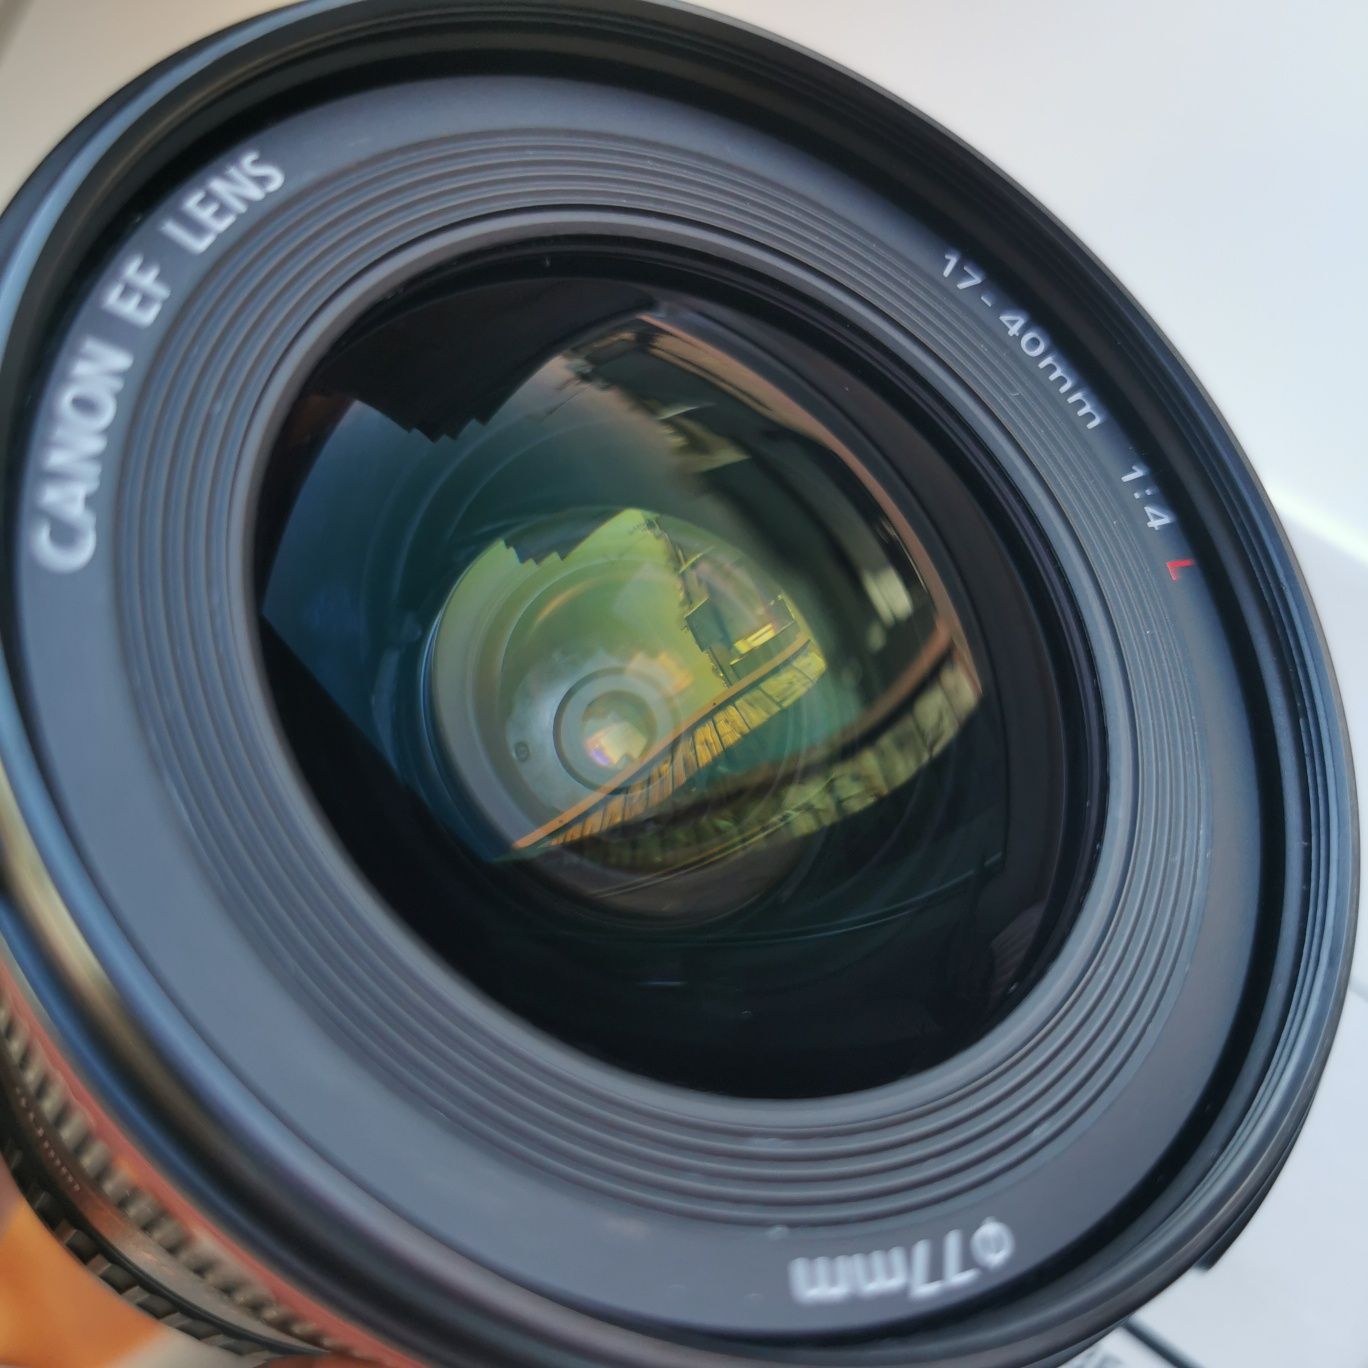 Canon 17-40 f4 L USM obiektyw szerokokątny zoom